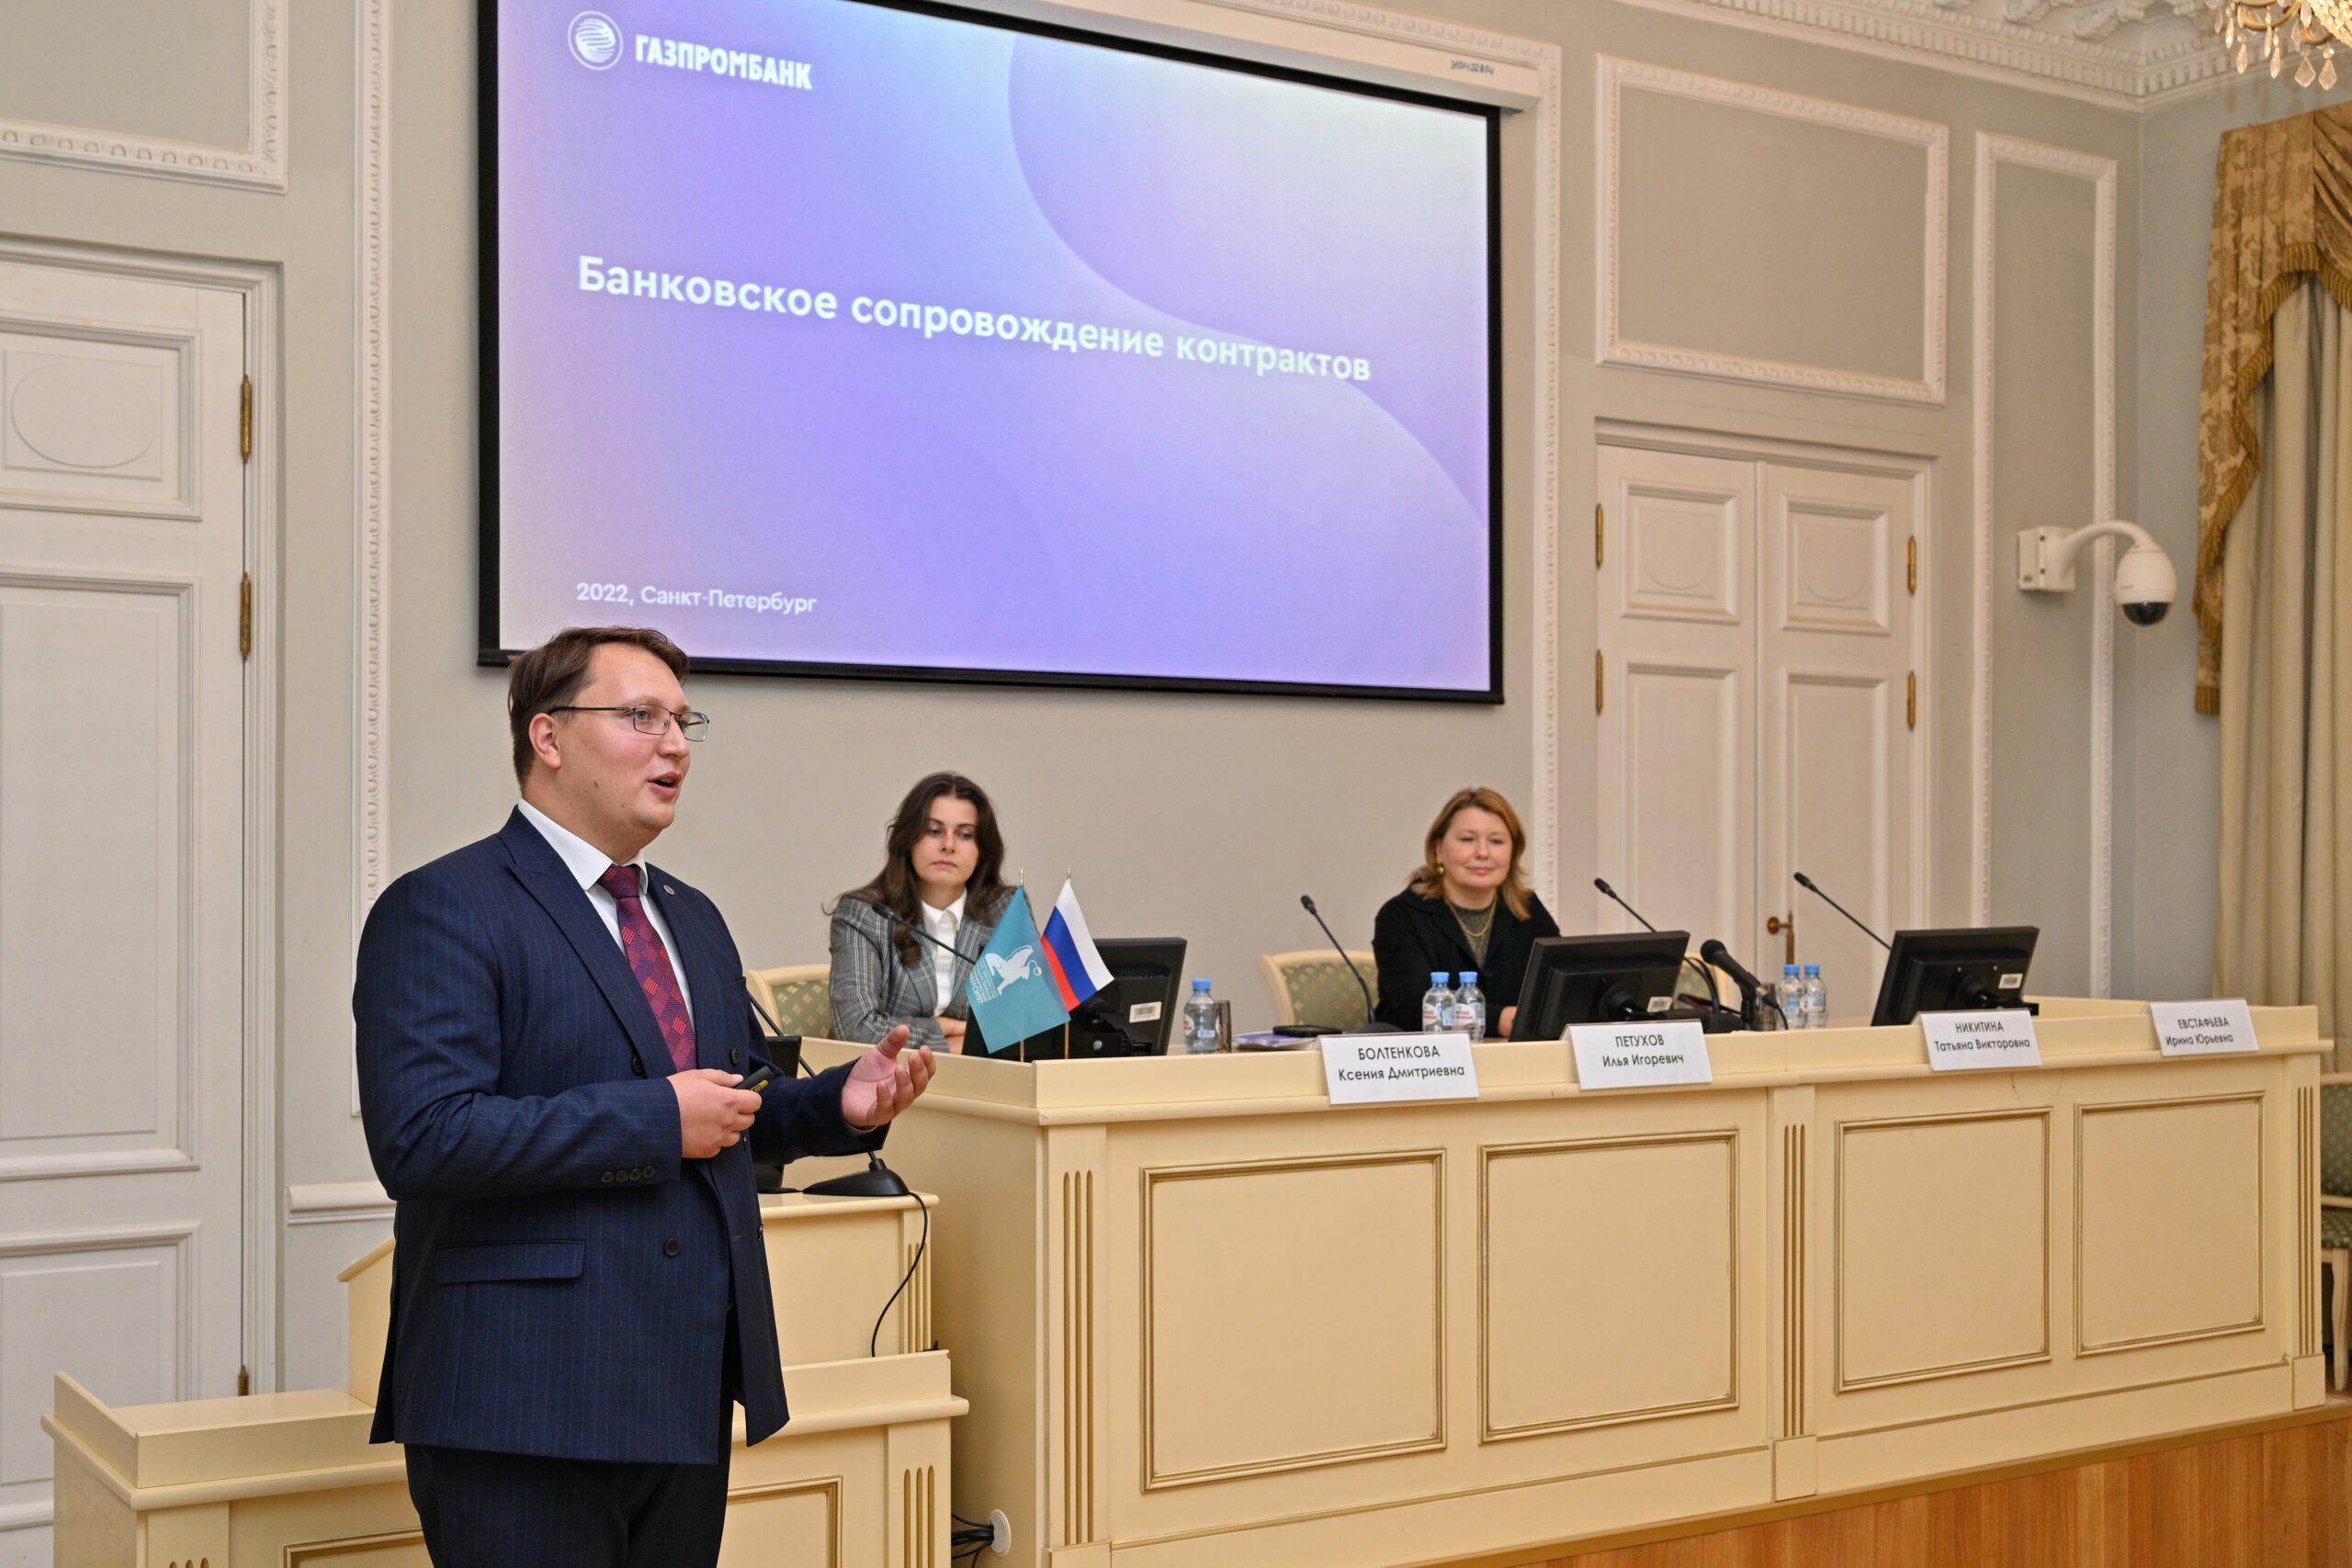 Гостевая лекция представителей АО «Газпромбанк» (г. Москва)